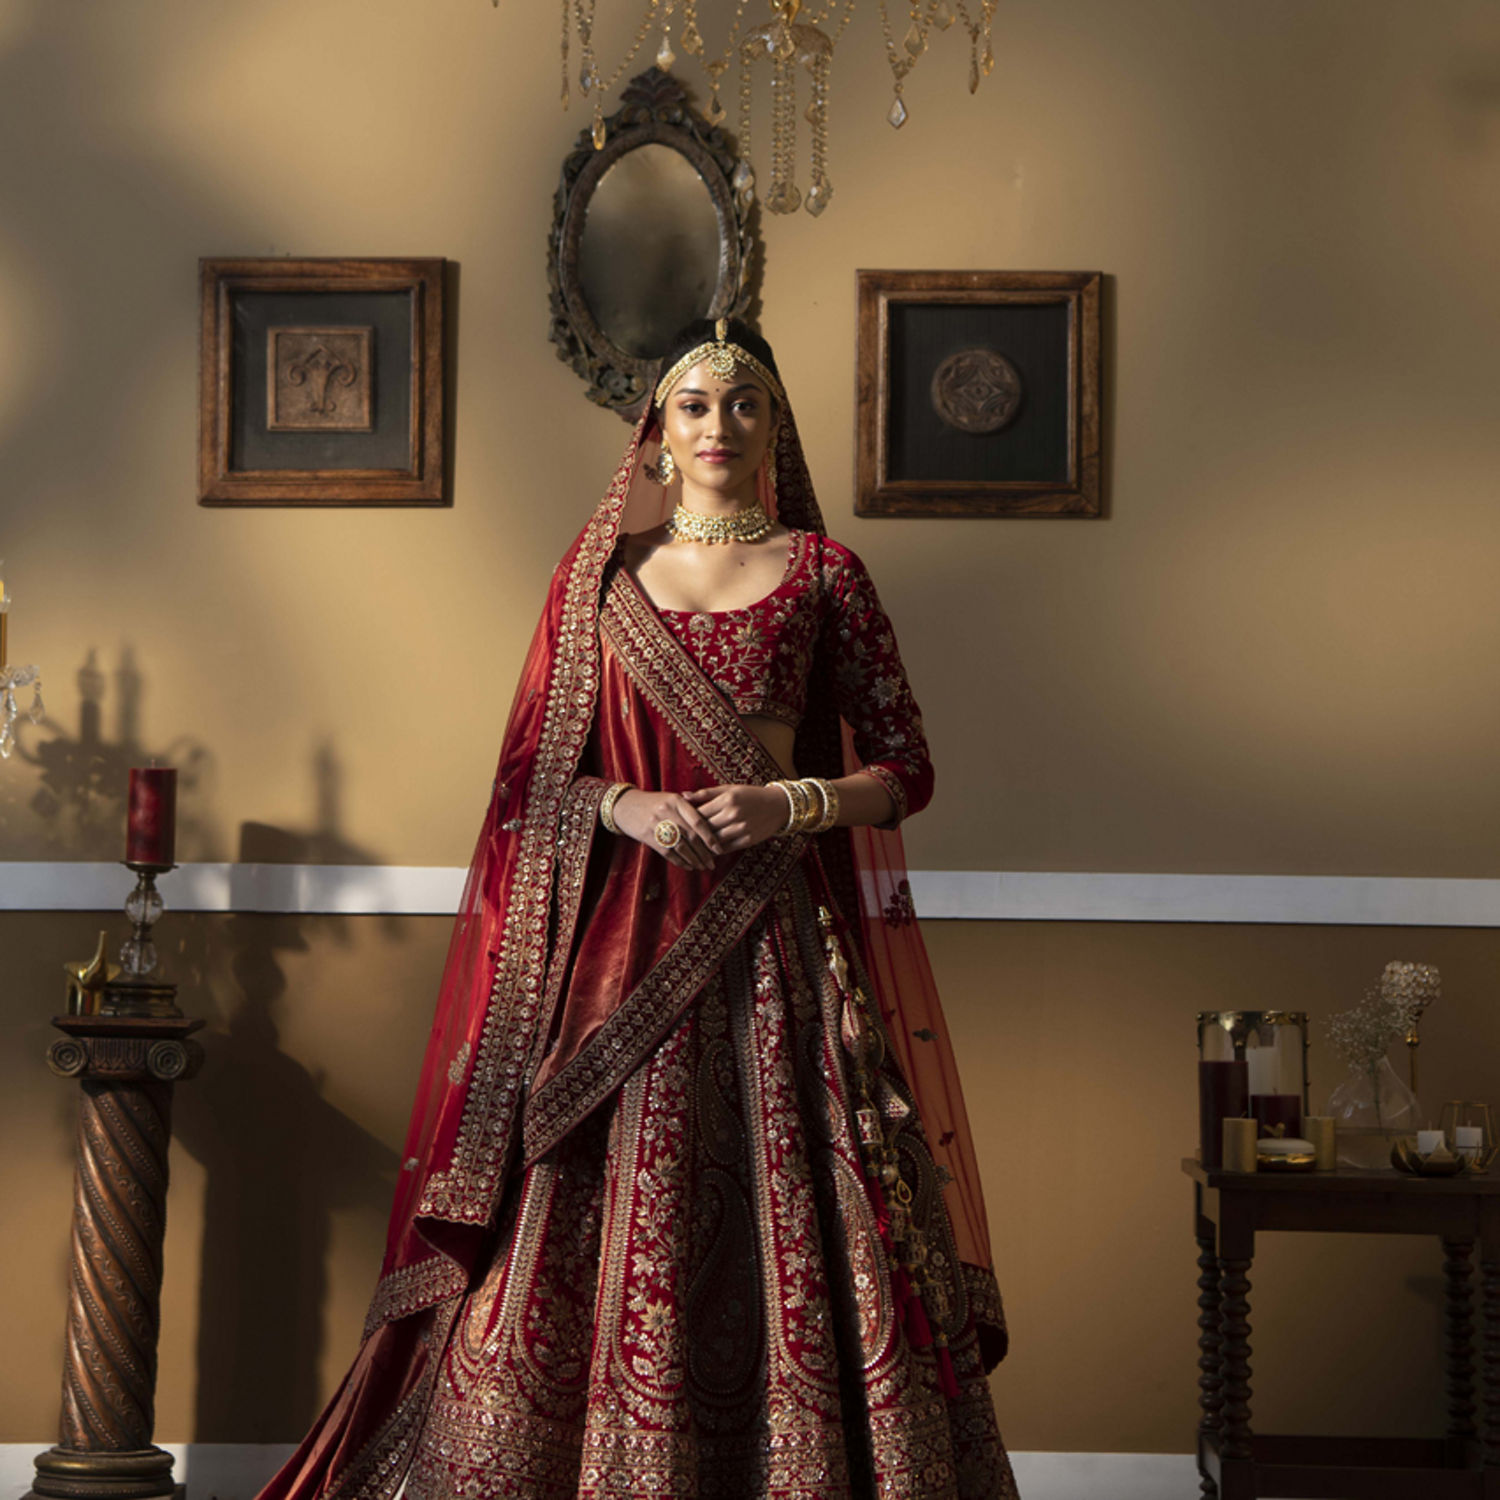 Buy Modern red blood wedding dress in Pakistan | online shopping in Pakistan